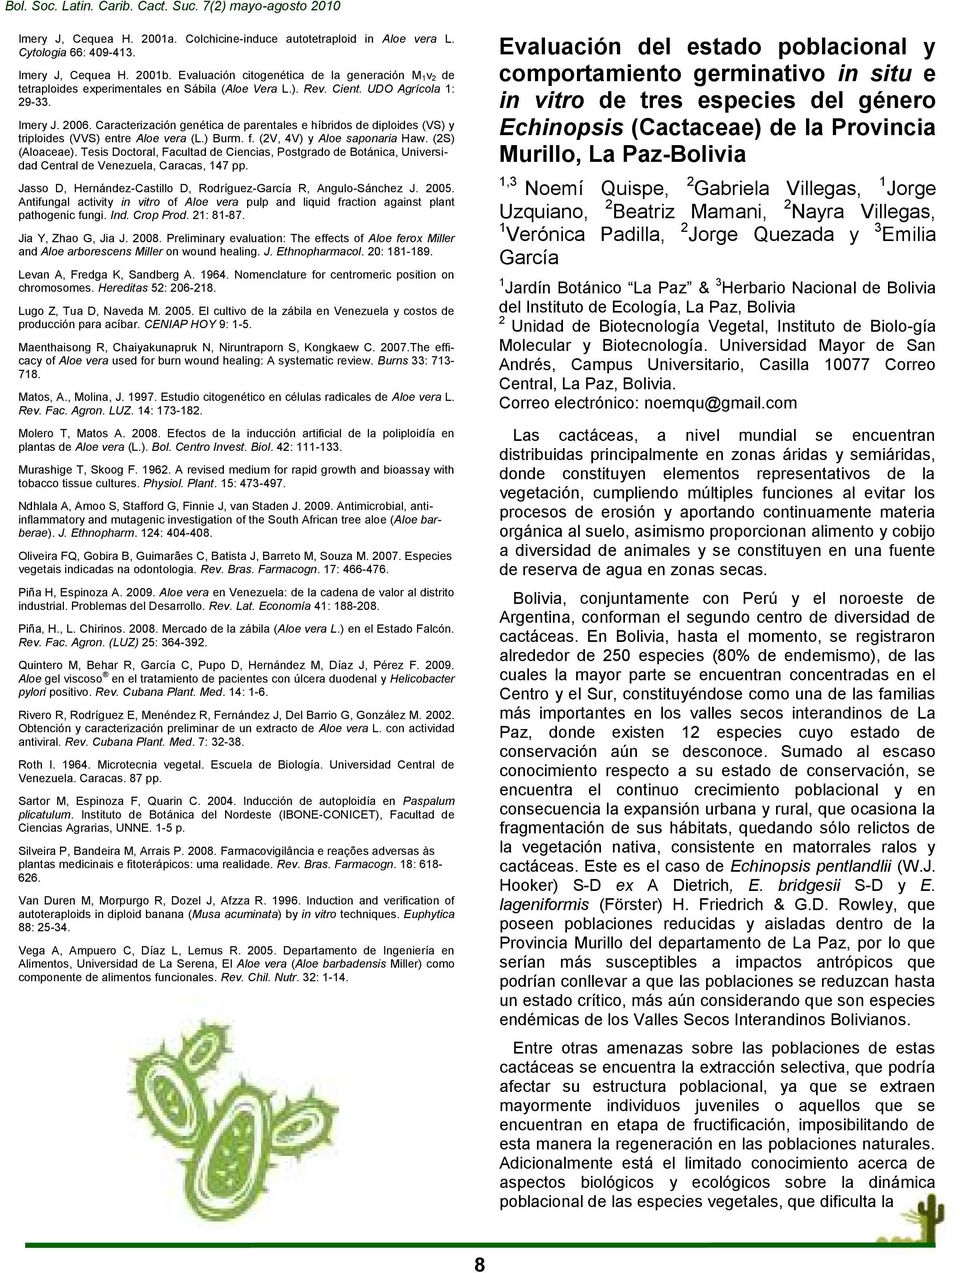 Caracterización genética de parentales e híbridos de diploides (VS) y triploides (VVS) entre Aloe vera (L.) Burm. f. (2V, 4V) y Aloe saponaria Haw. (2S) (Aloaceae).